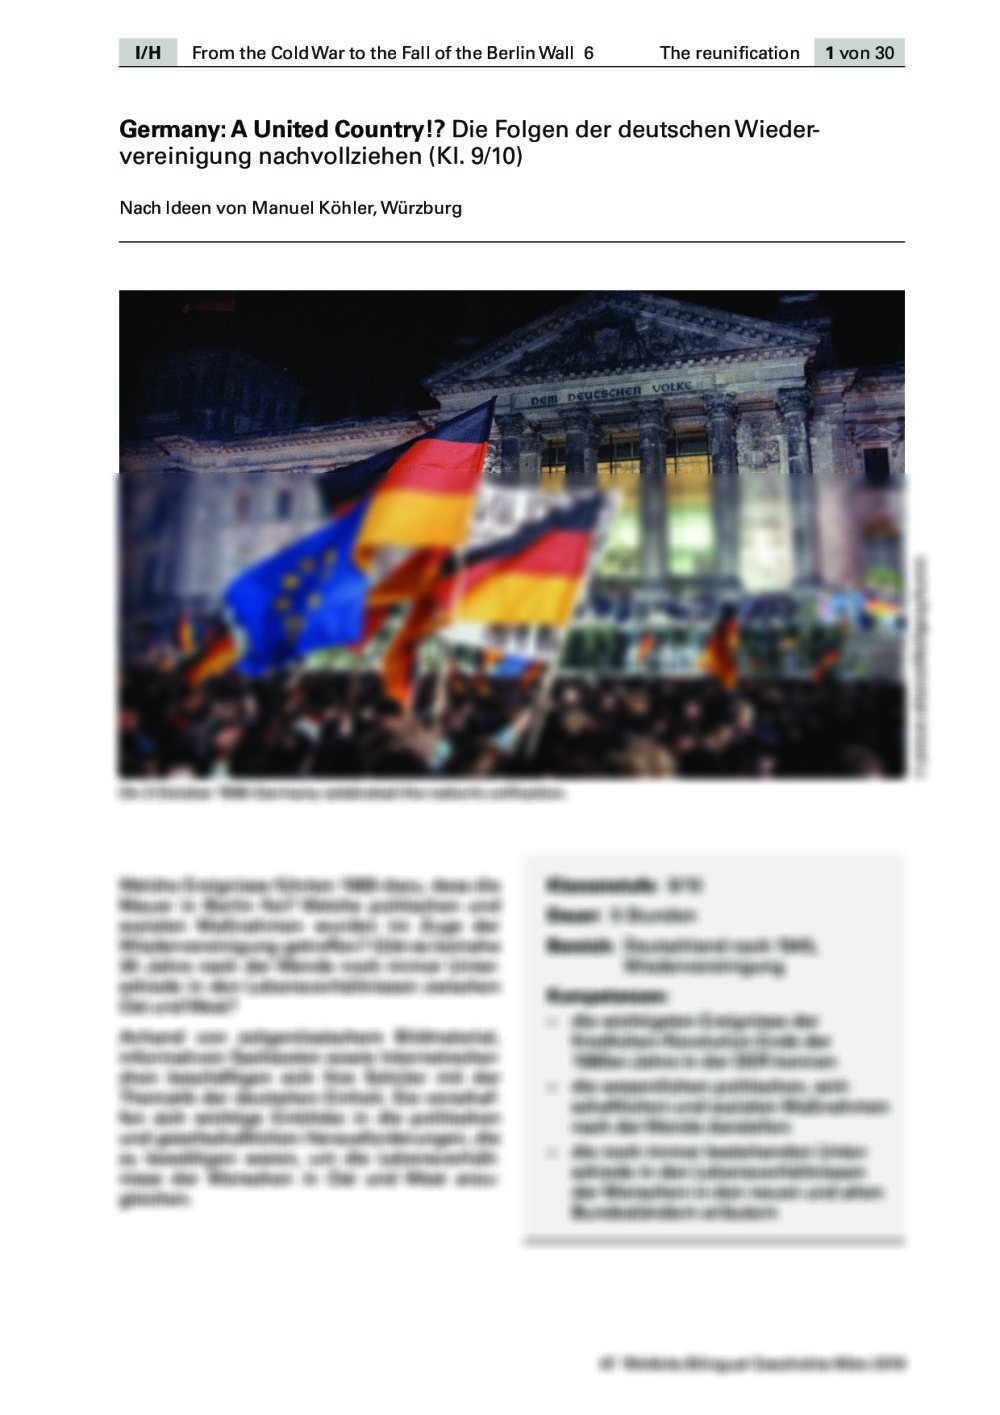 Die deutsche Wiedervereinigung und ihre Folgen - Seite 1